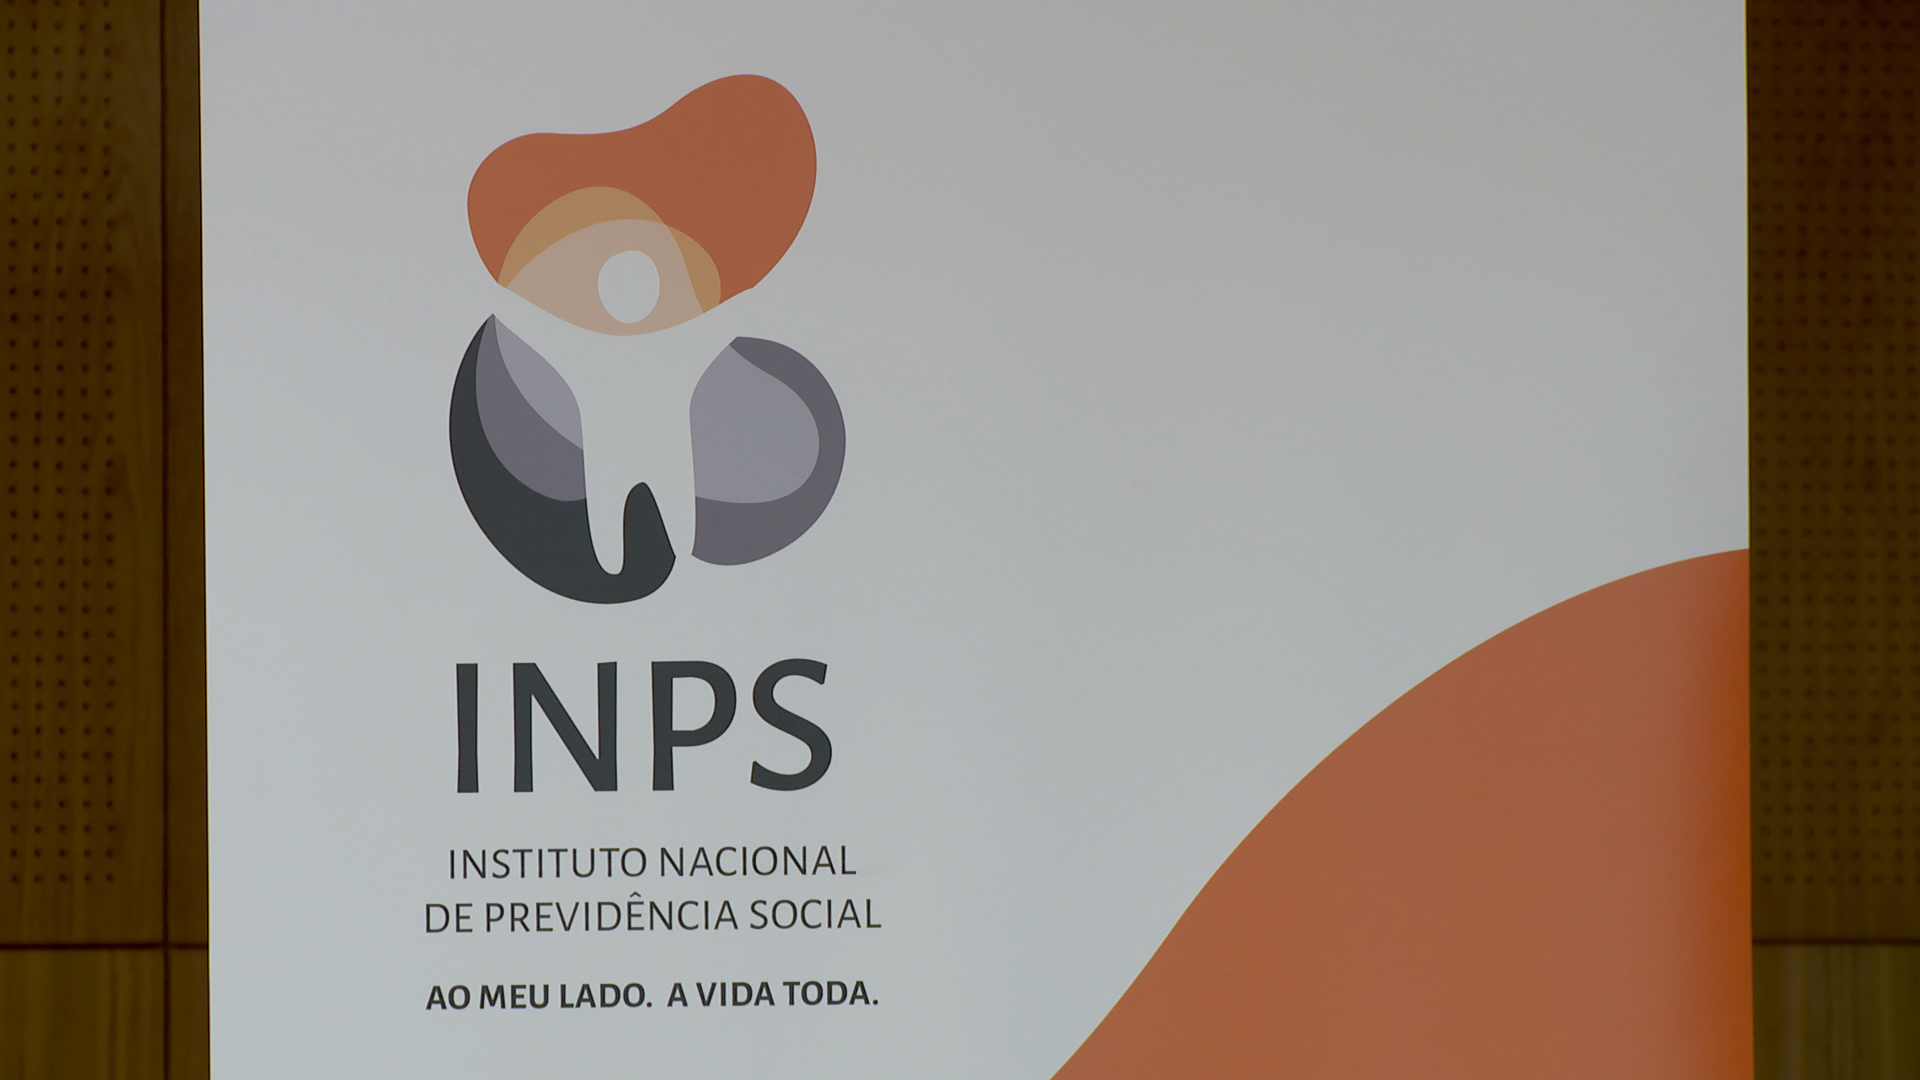 INPS com nova identidade visual adaptada a sua modernização administrativa